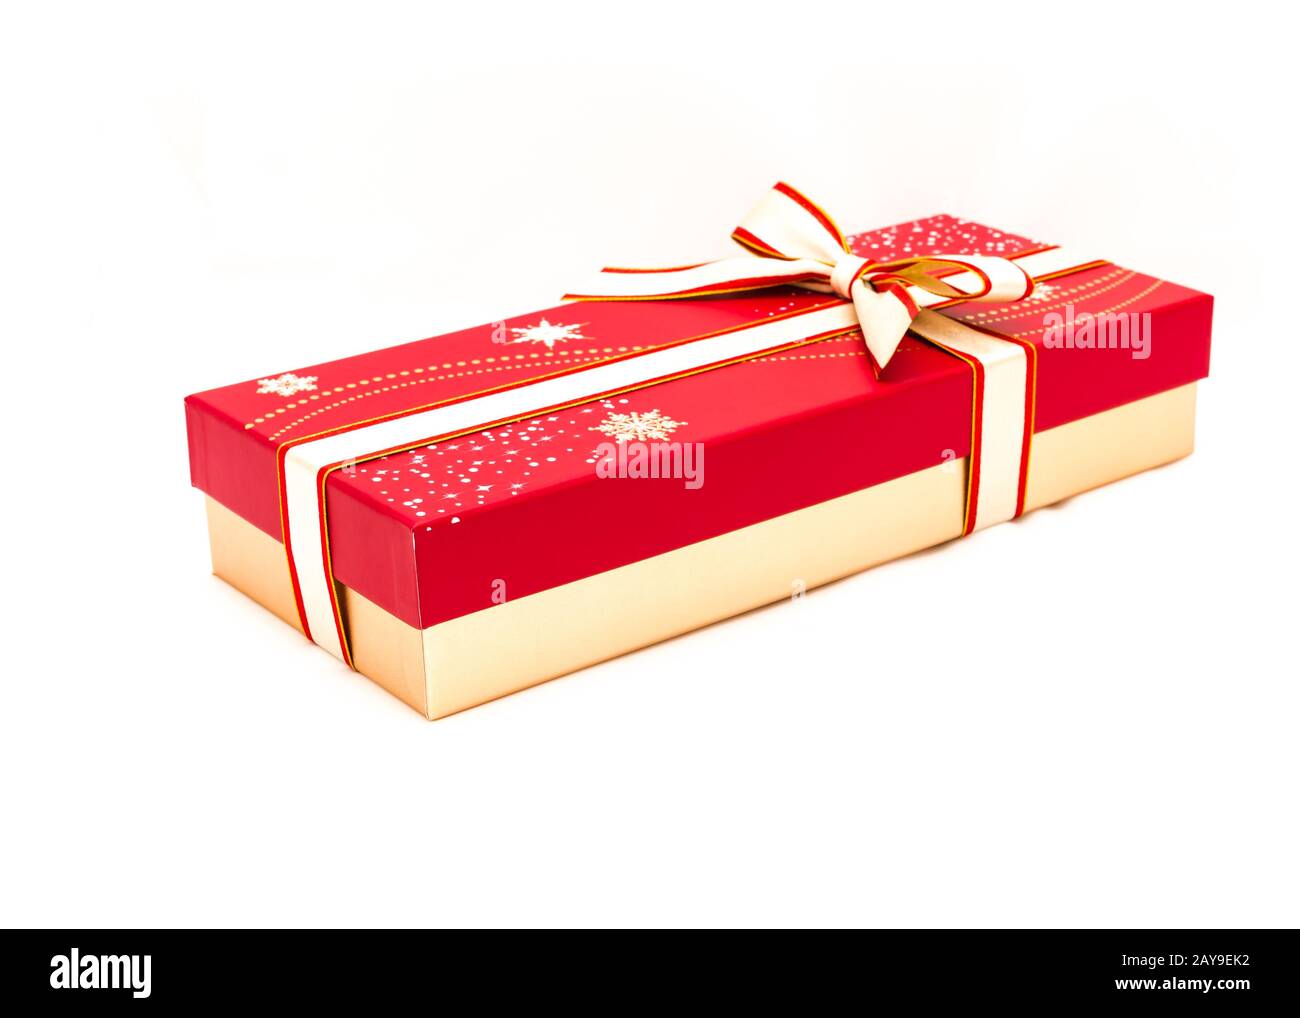 Cerrar caja de chocolate con nudo de lazo de color rojo y amarillo aislado  sobre fondo blanco. Caja de regalo de papel con cinta de lazo para el  concepto de paquete de